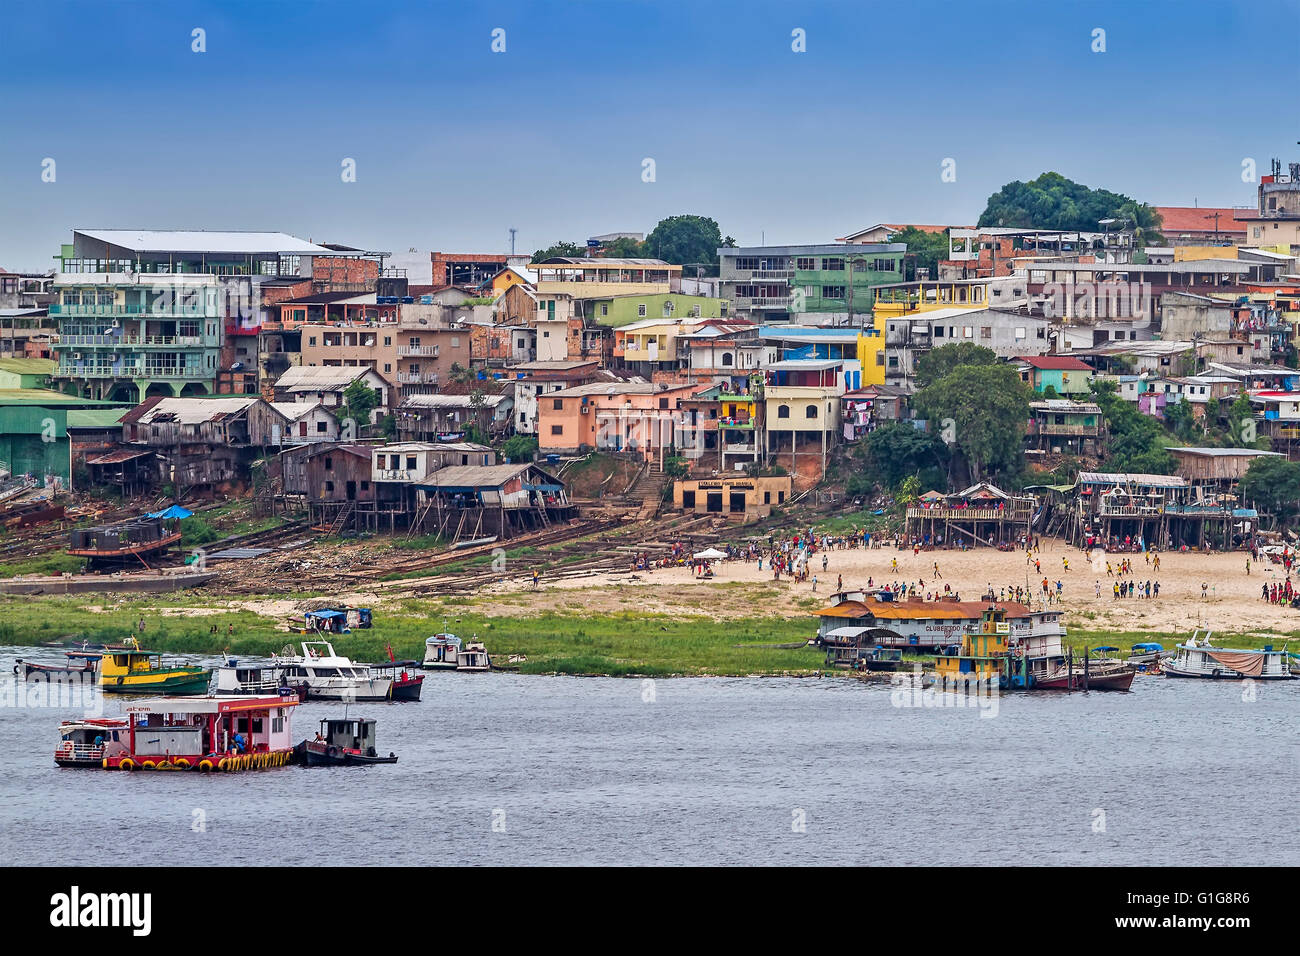 Les maisons sur pilotis de la rivière Manaus Brésil Banque D'Images